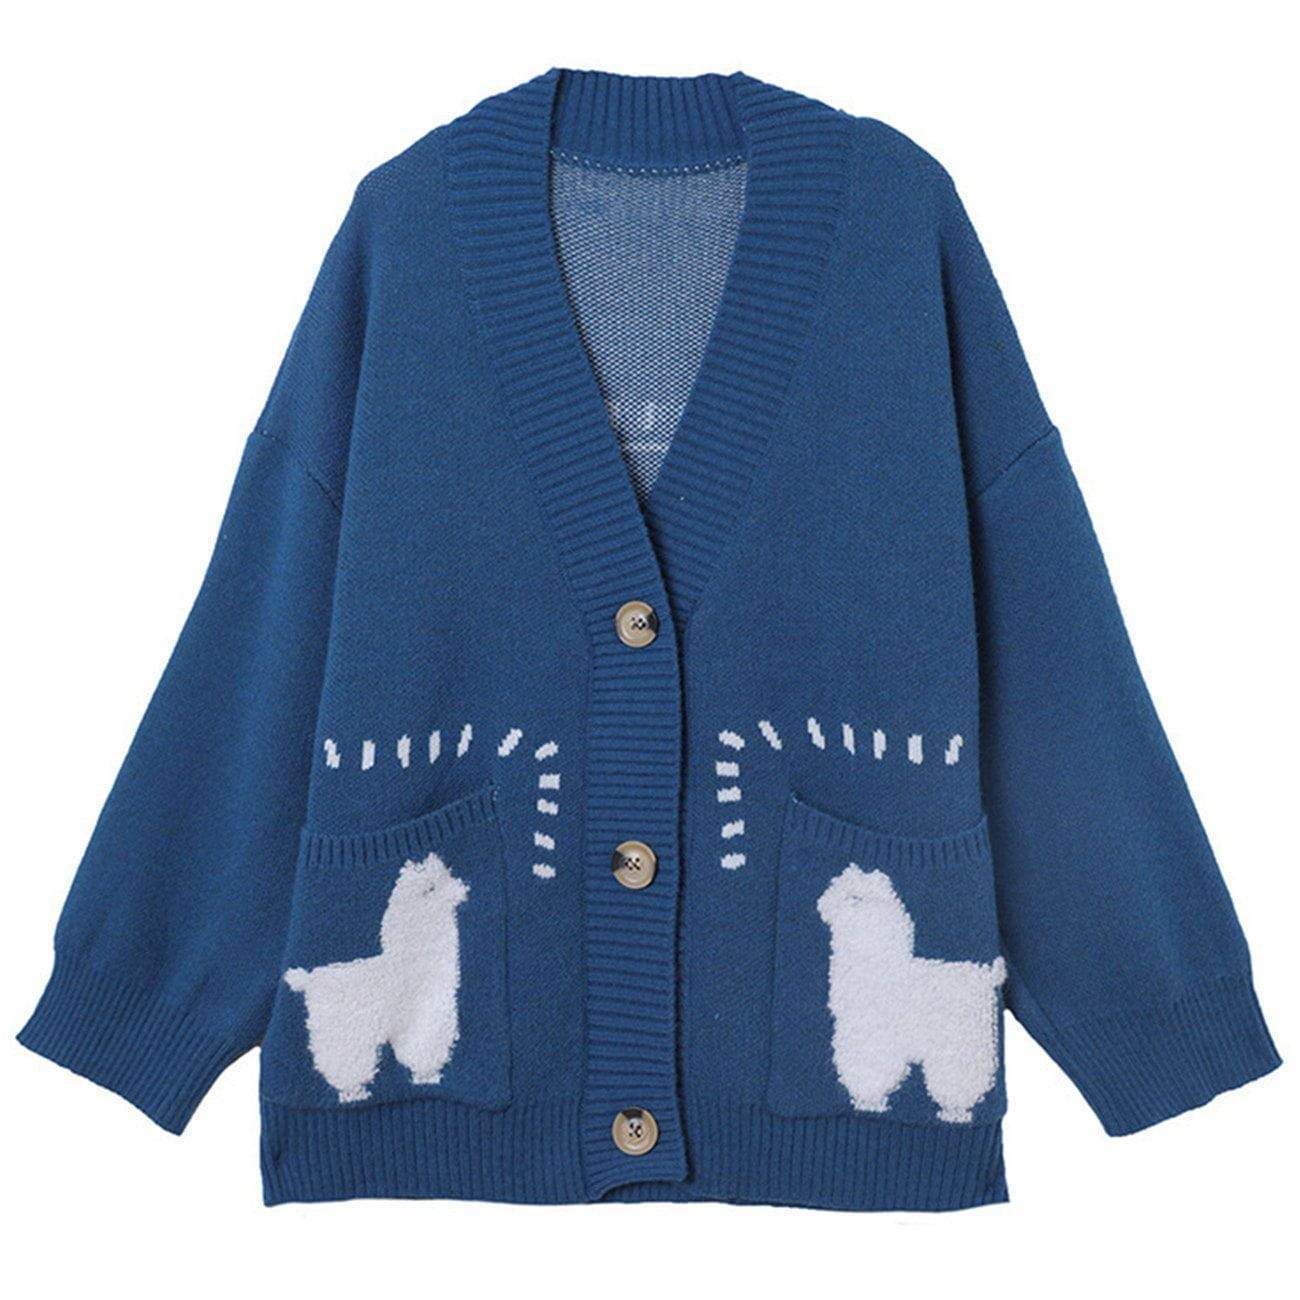 WLS Lama Stitching Buttoned Cardigan Sweater